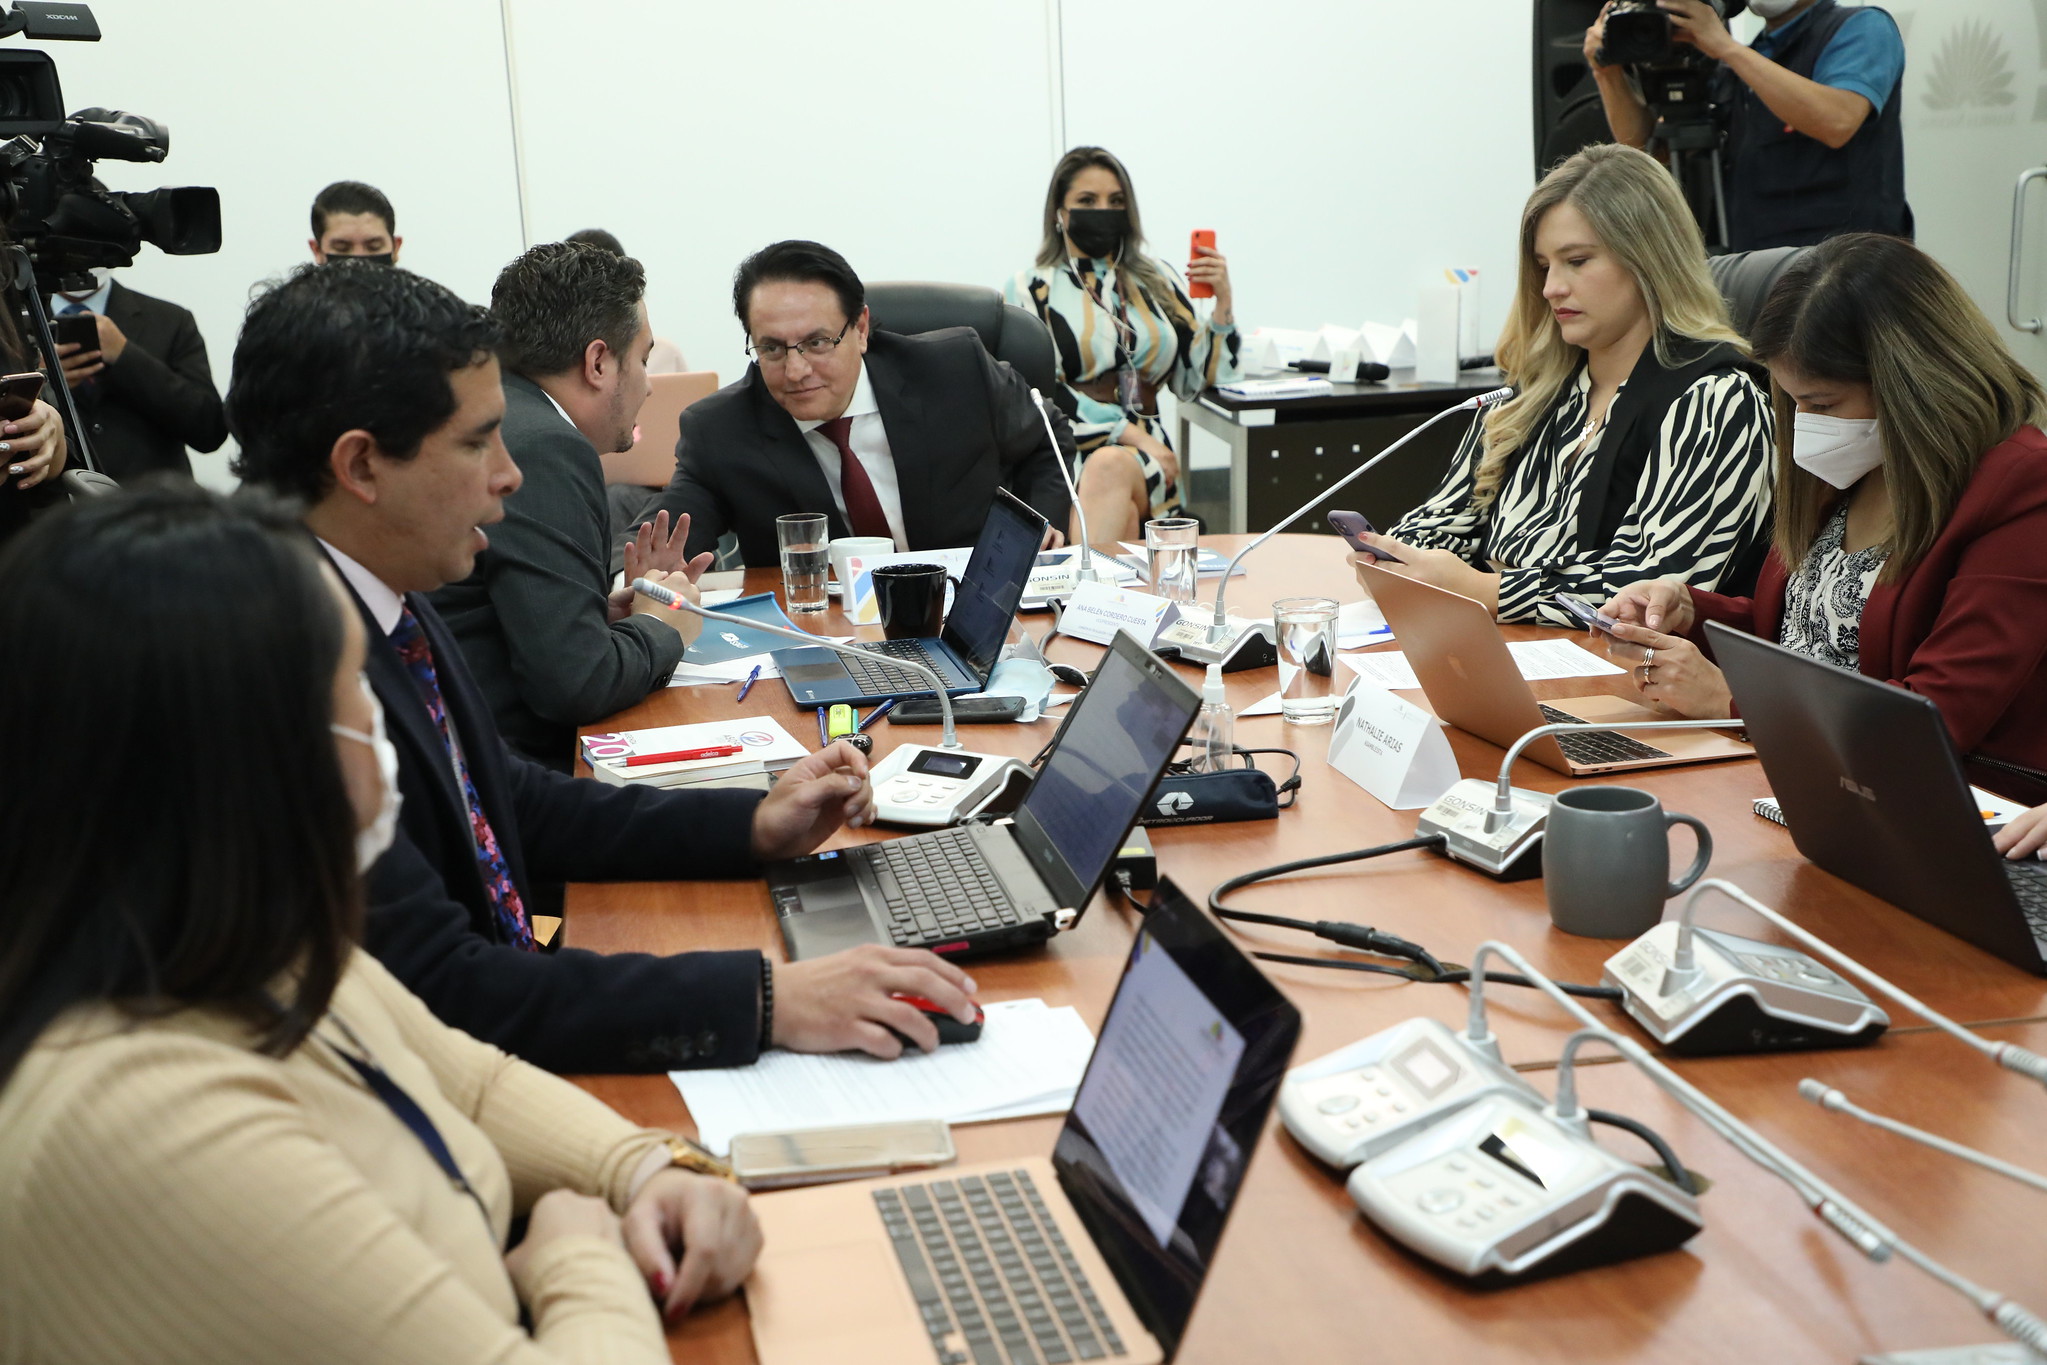 La Comisión de Fiscalización conoció el borrador del informe sobre investigación a universidades emblemáticas. Foto: Asamblea Nacional